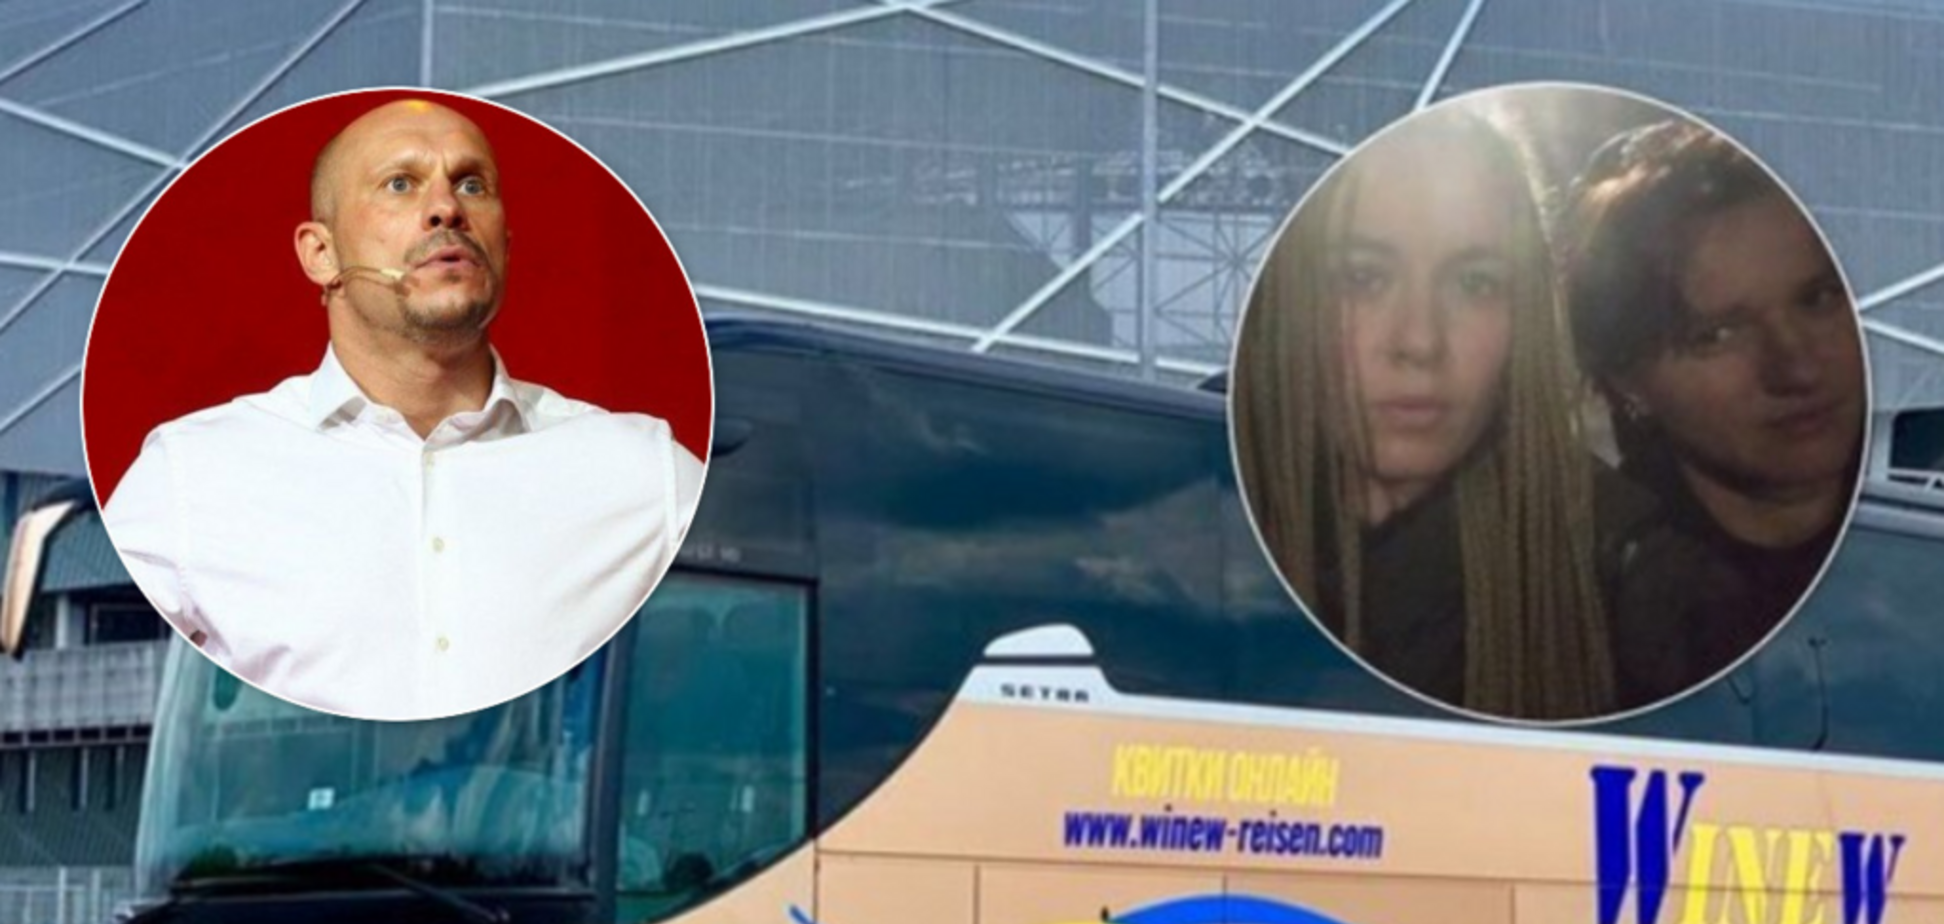 Скандал с волонтерками в автобусе: Кива позвал на работу водителя-хама